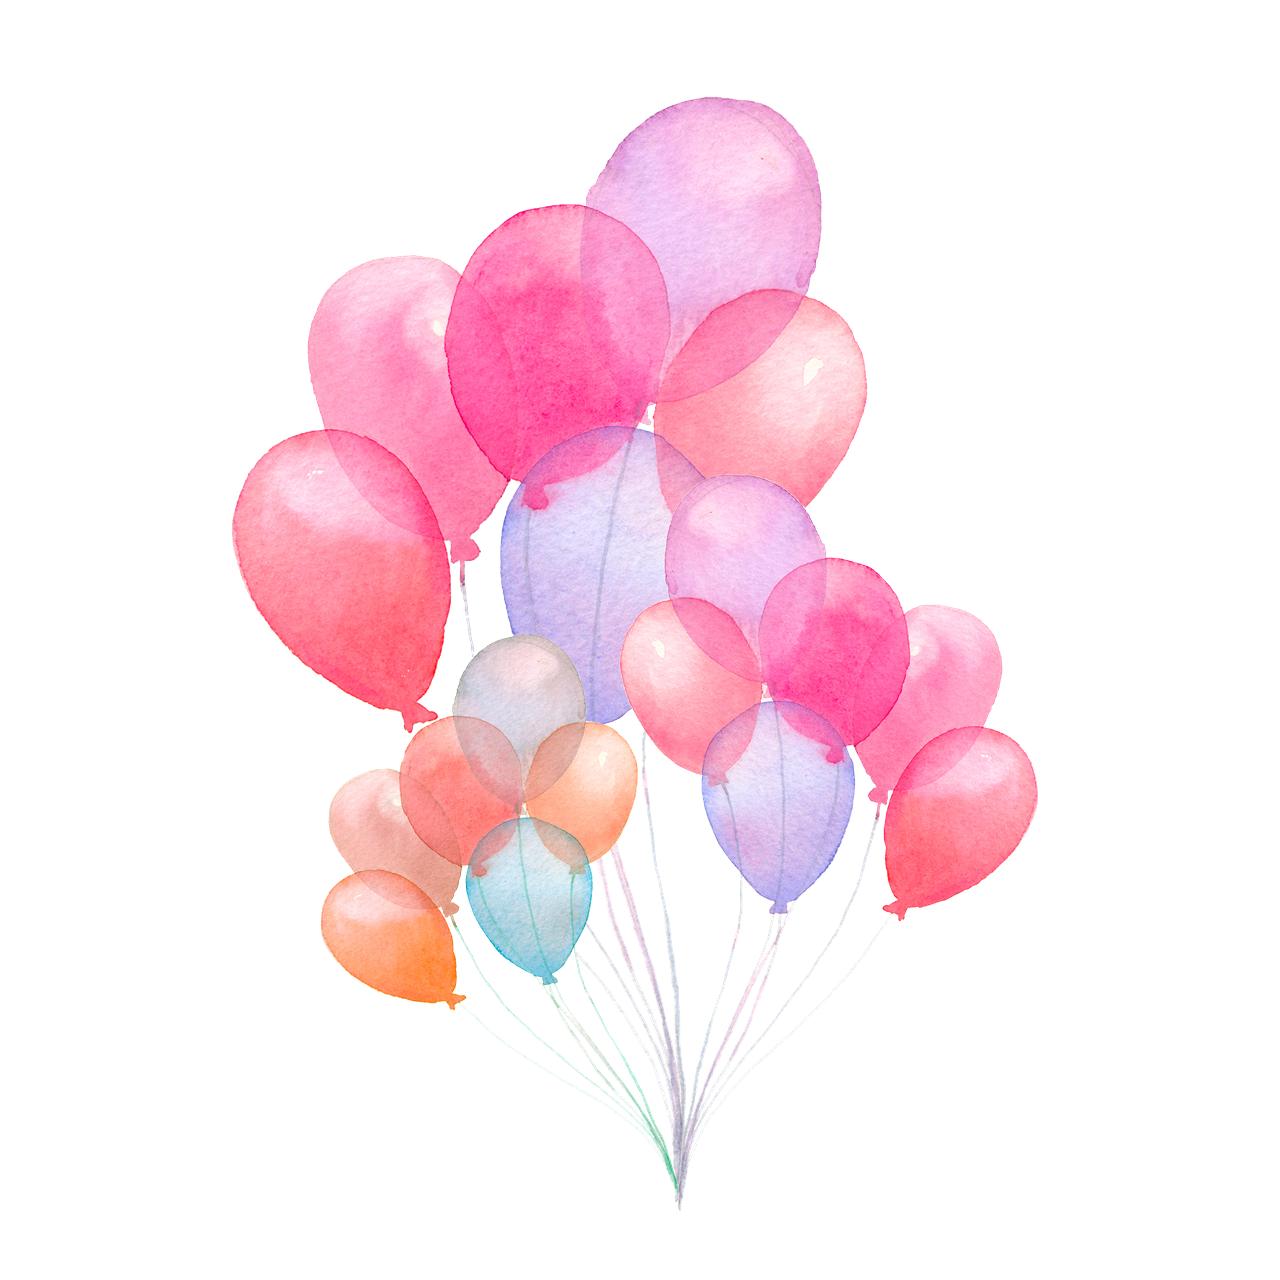 Красочные воздушные шары PNG картина